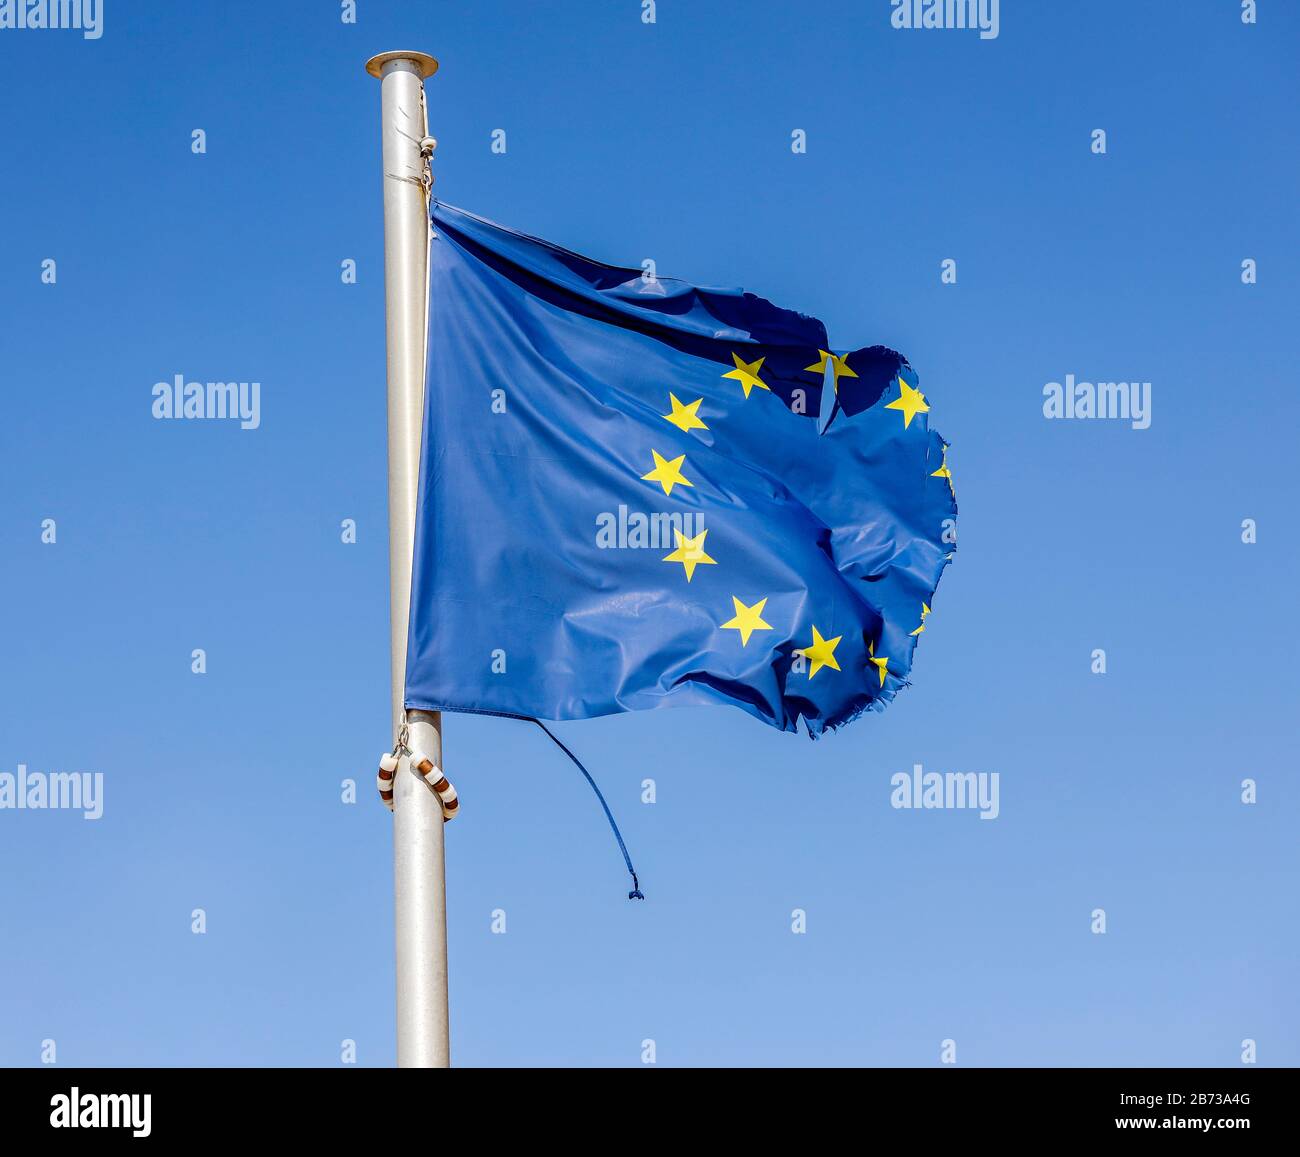 Europa - la bandiera europea dilaniata soffia nel vento al flagpole, immagine simbolica DELL'EUROPA IN CRISI. Europa - Zerrissene Europafahne Flattert am Fahn Foto Stock